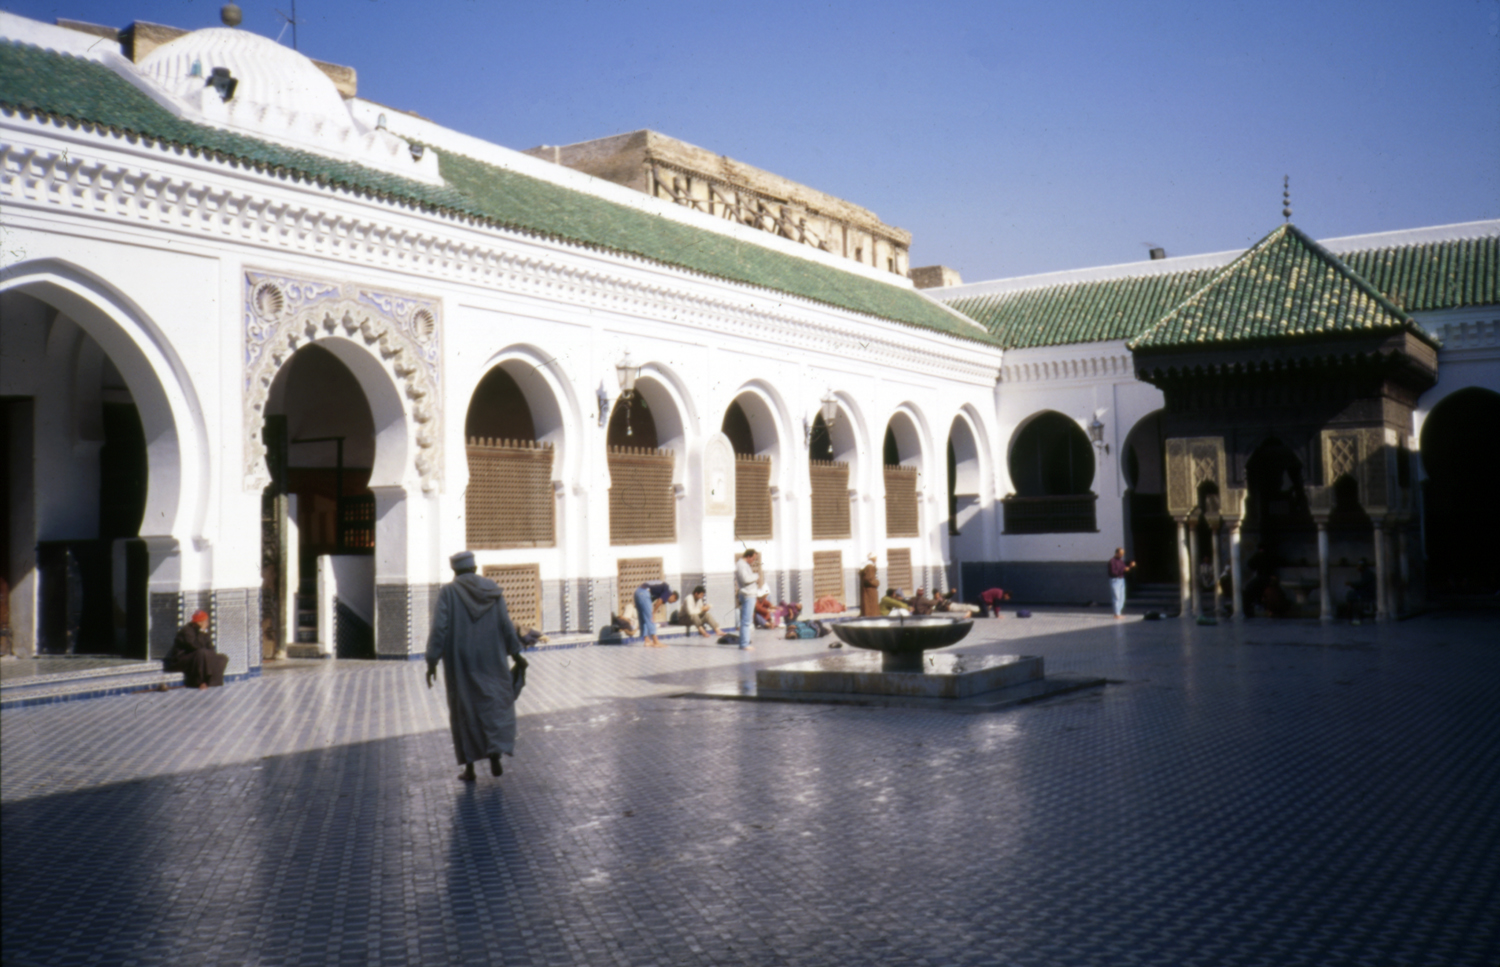 Jami' al-Qarawiyyin